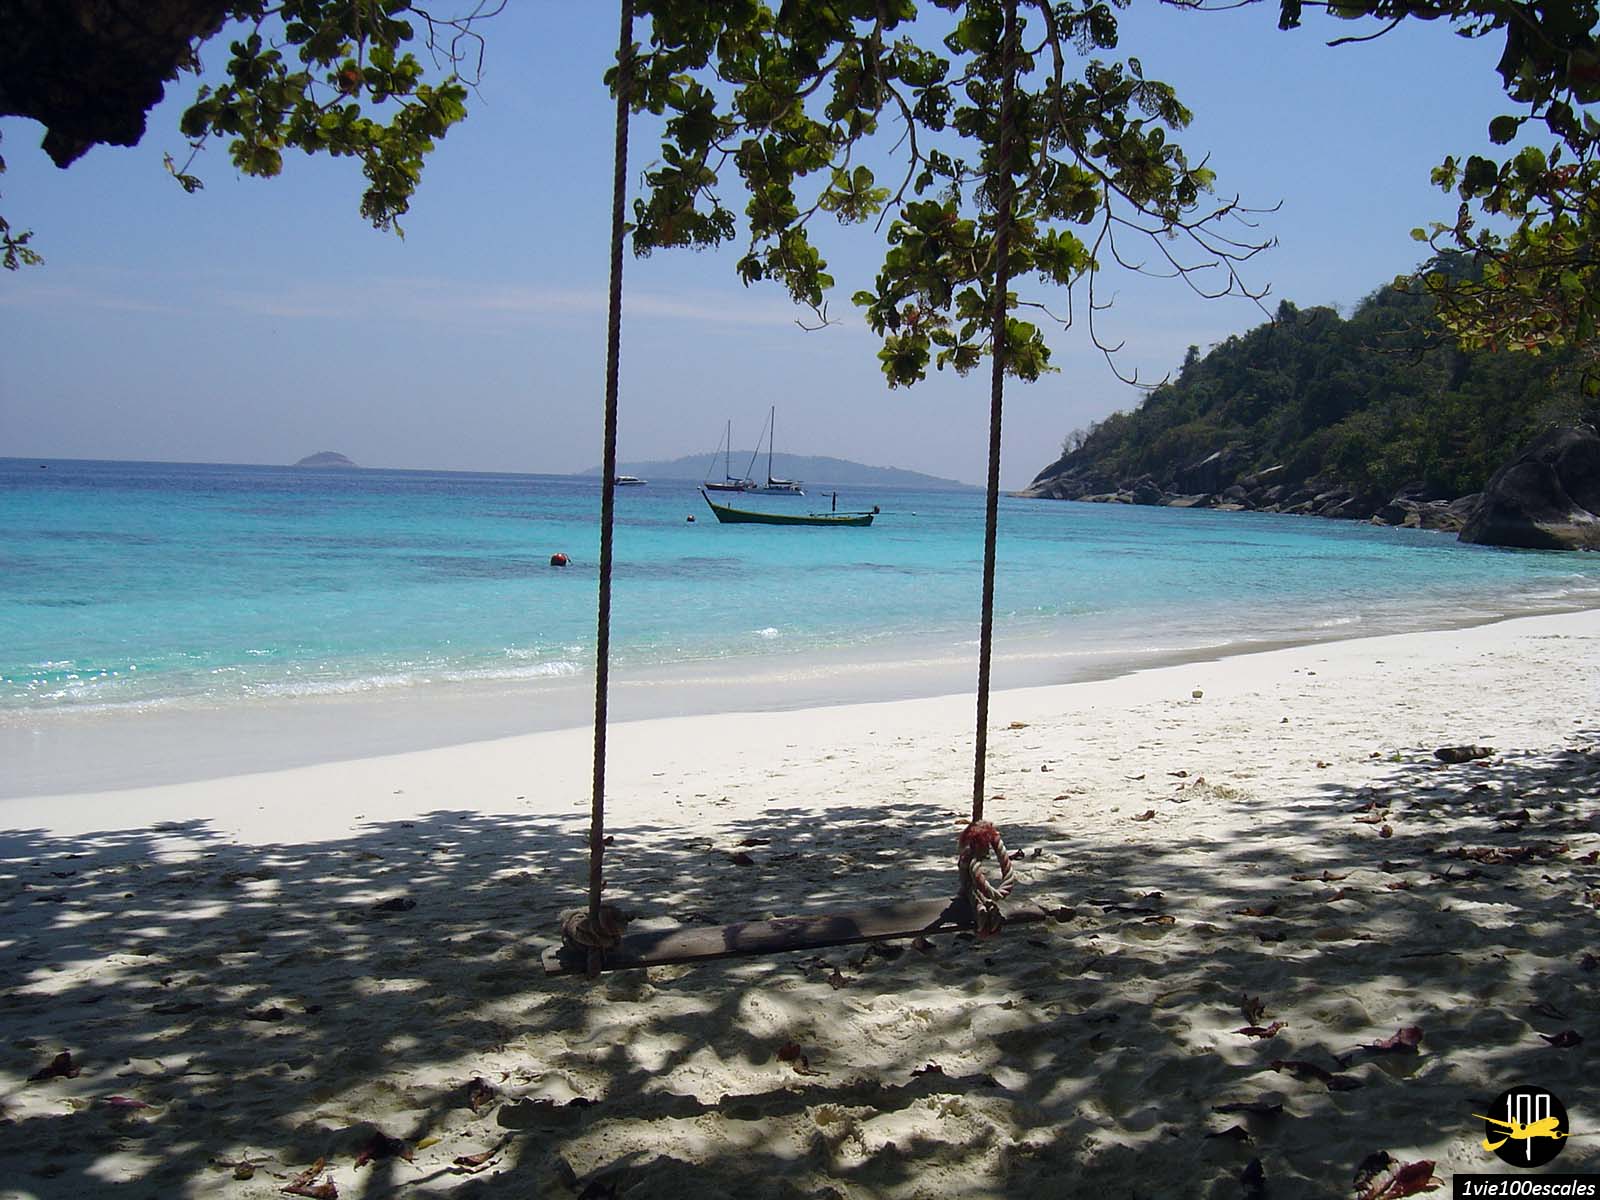 Recouvertes d’une végétation dense et luxuriante, les îles Similan sont bordées de nombreuses plages idylliques constituées d’un sable blanc ultra fin